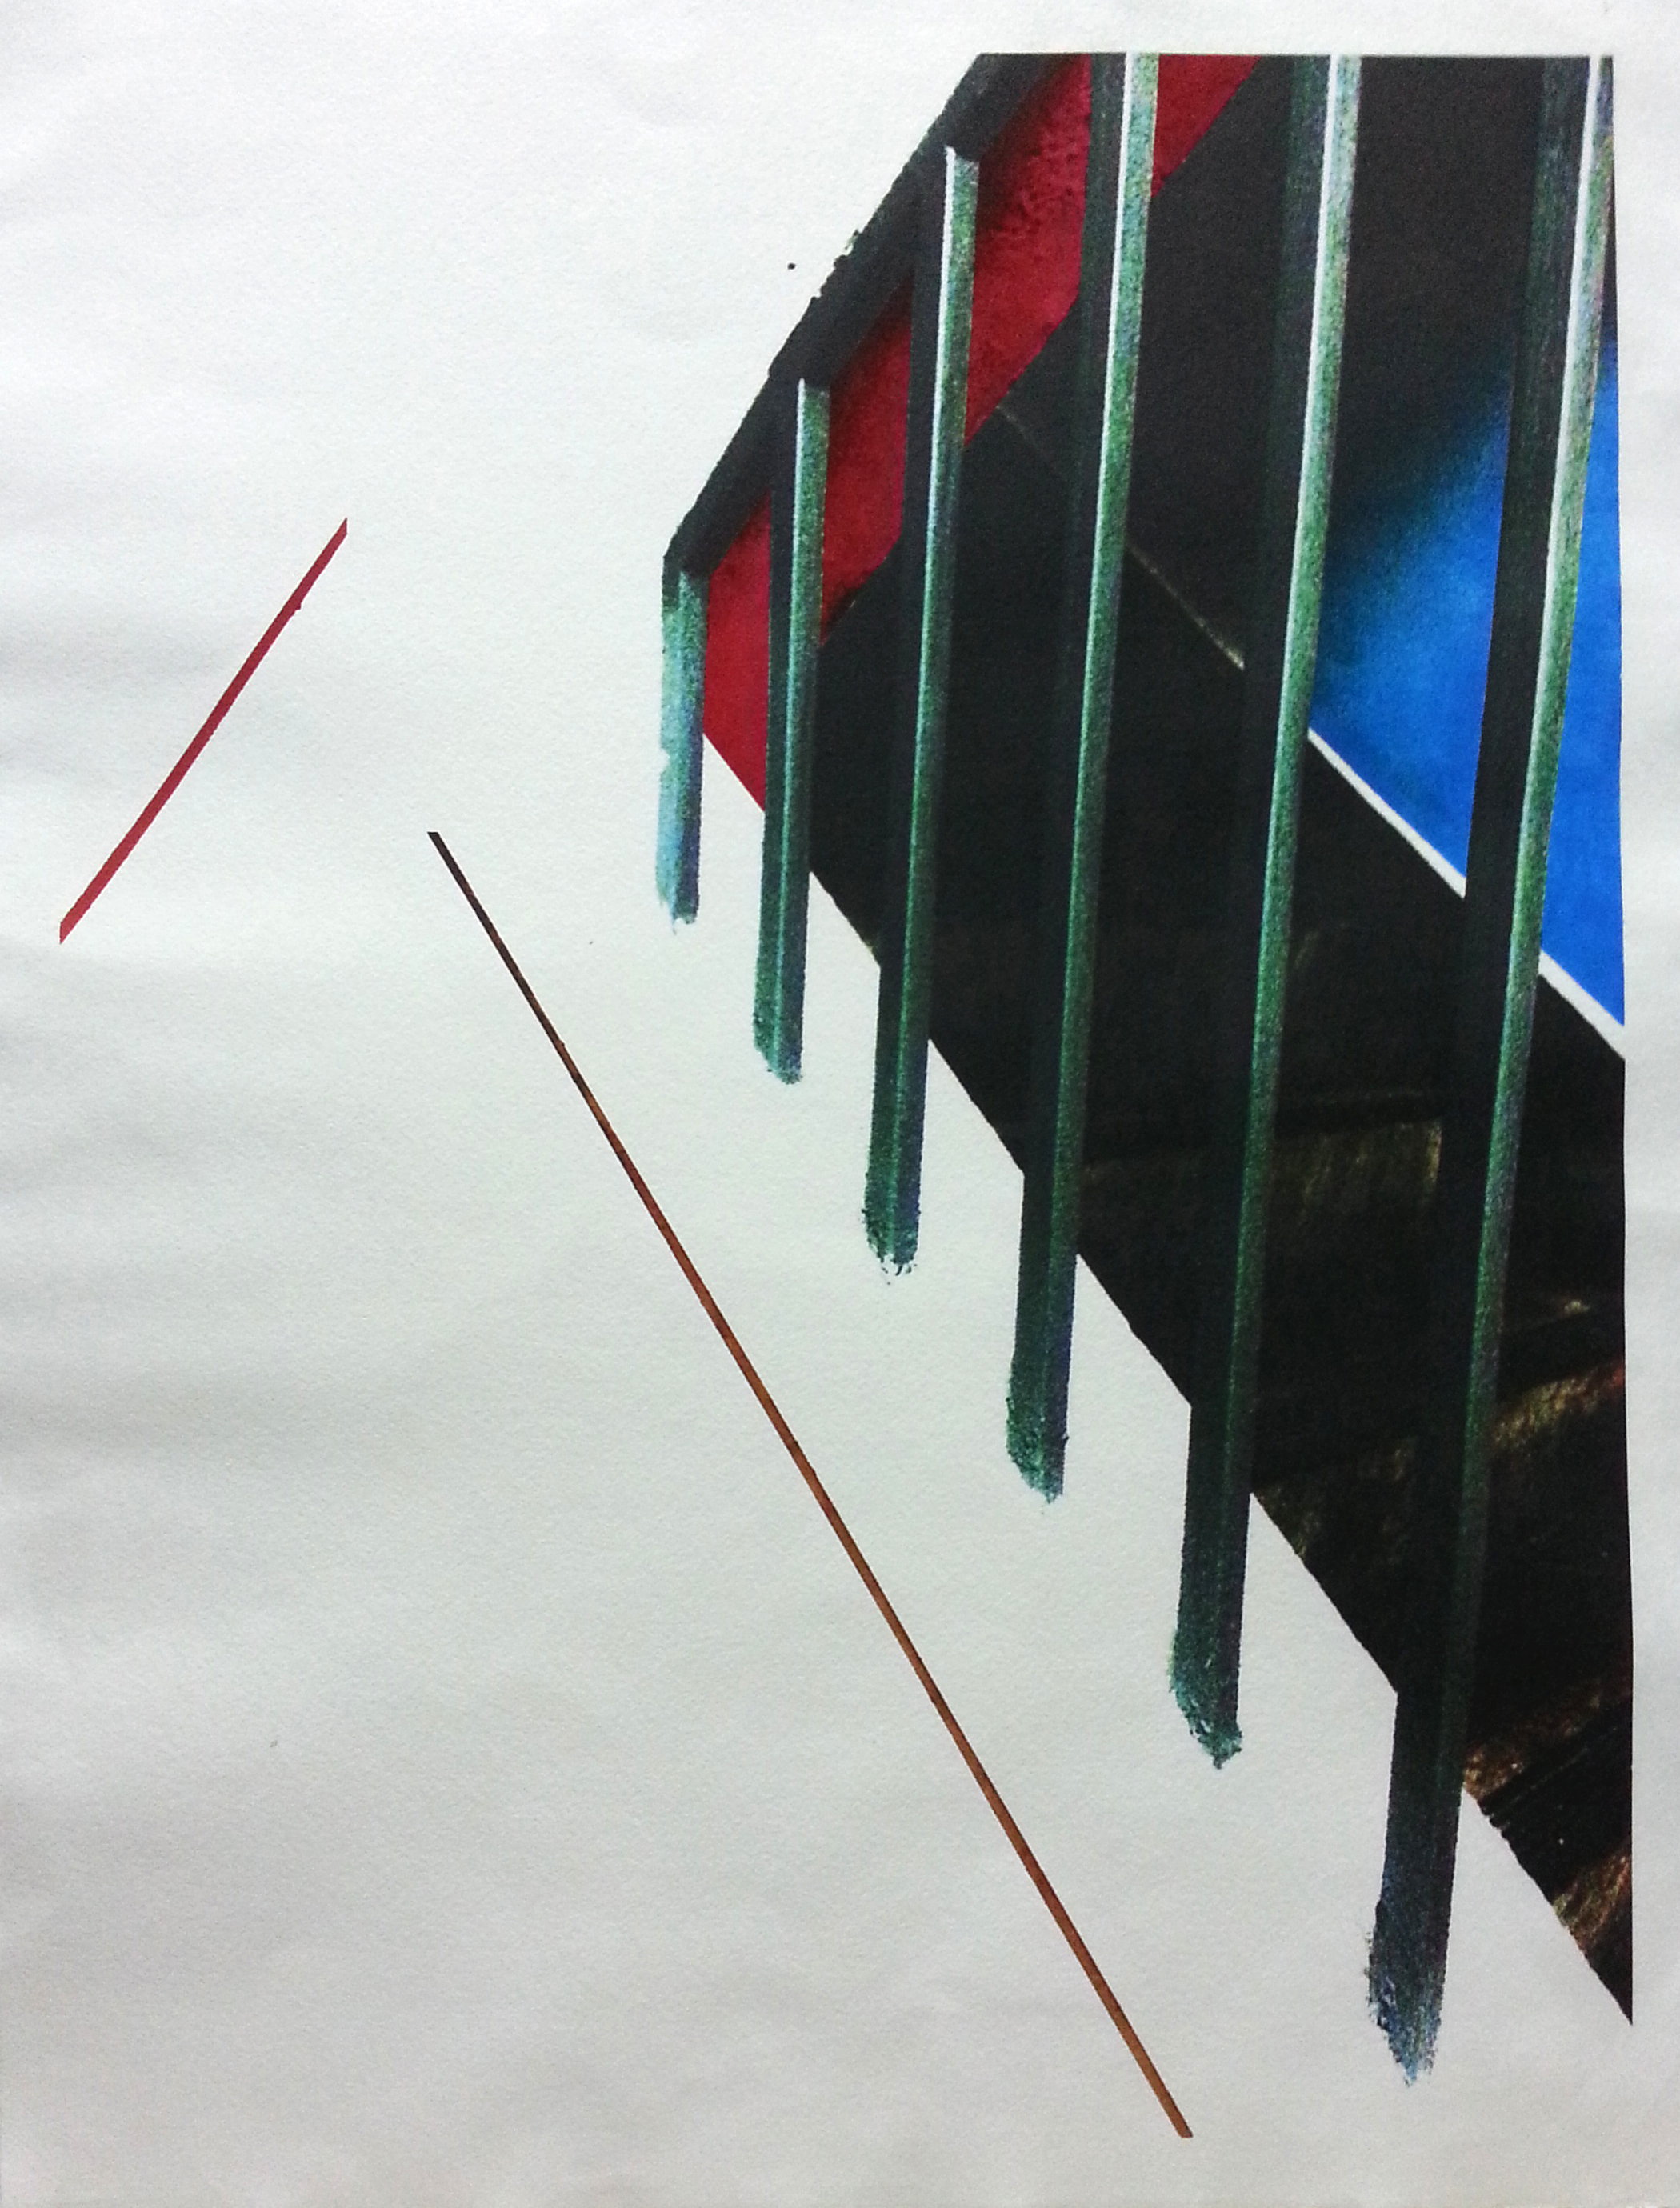 Fresco (I)
2013
Water colour on inkjet print
80cm x 60cm